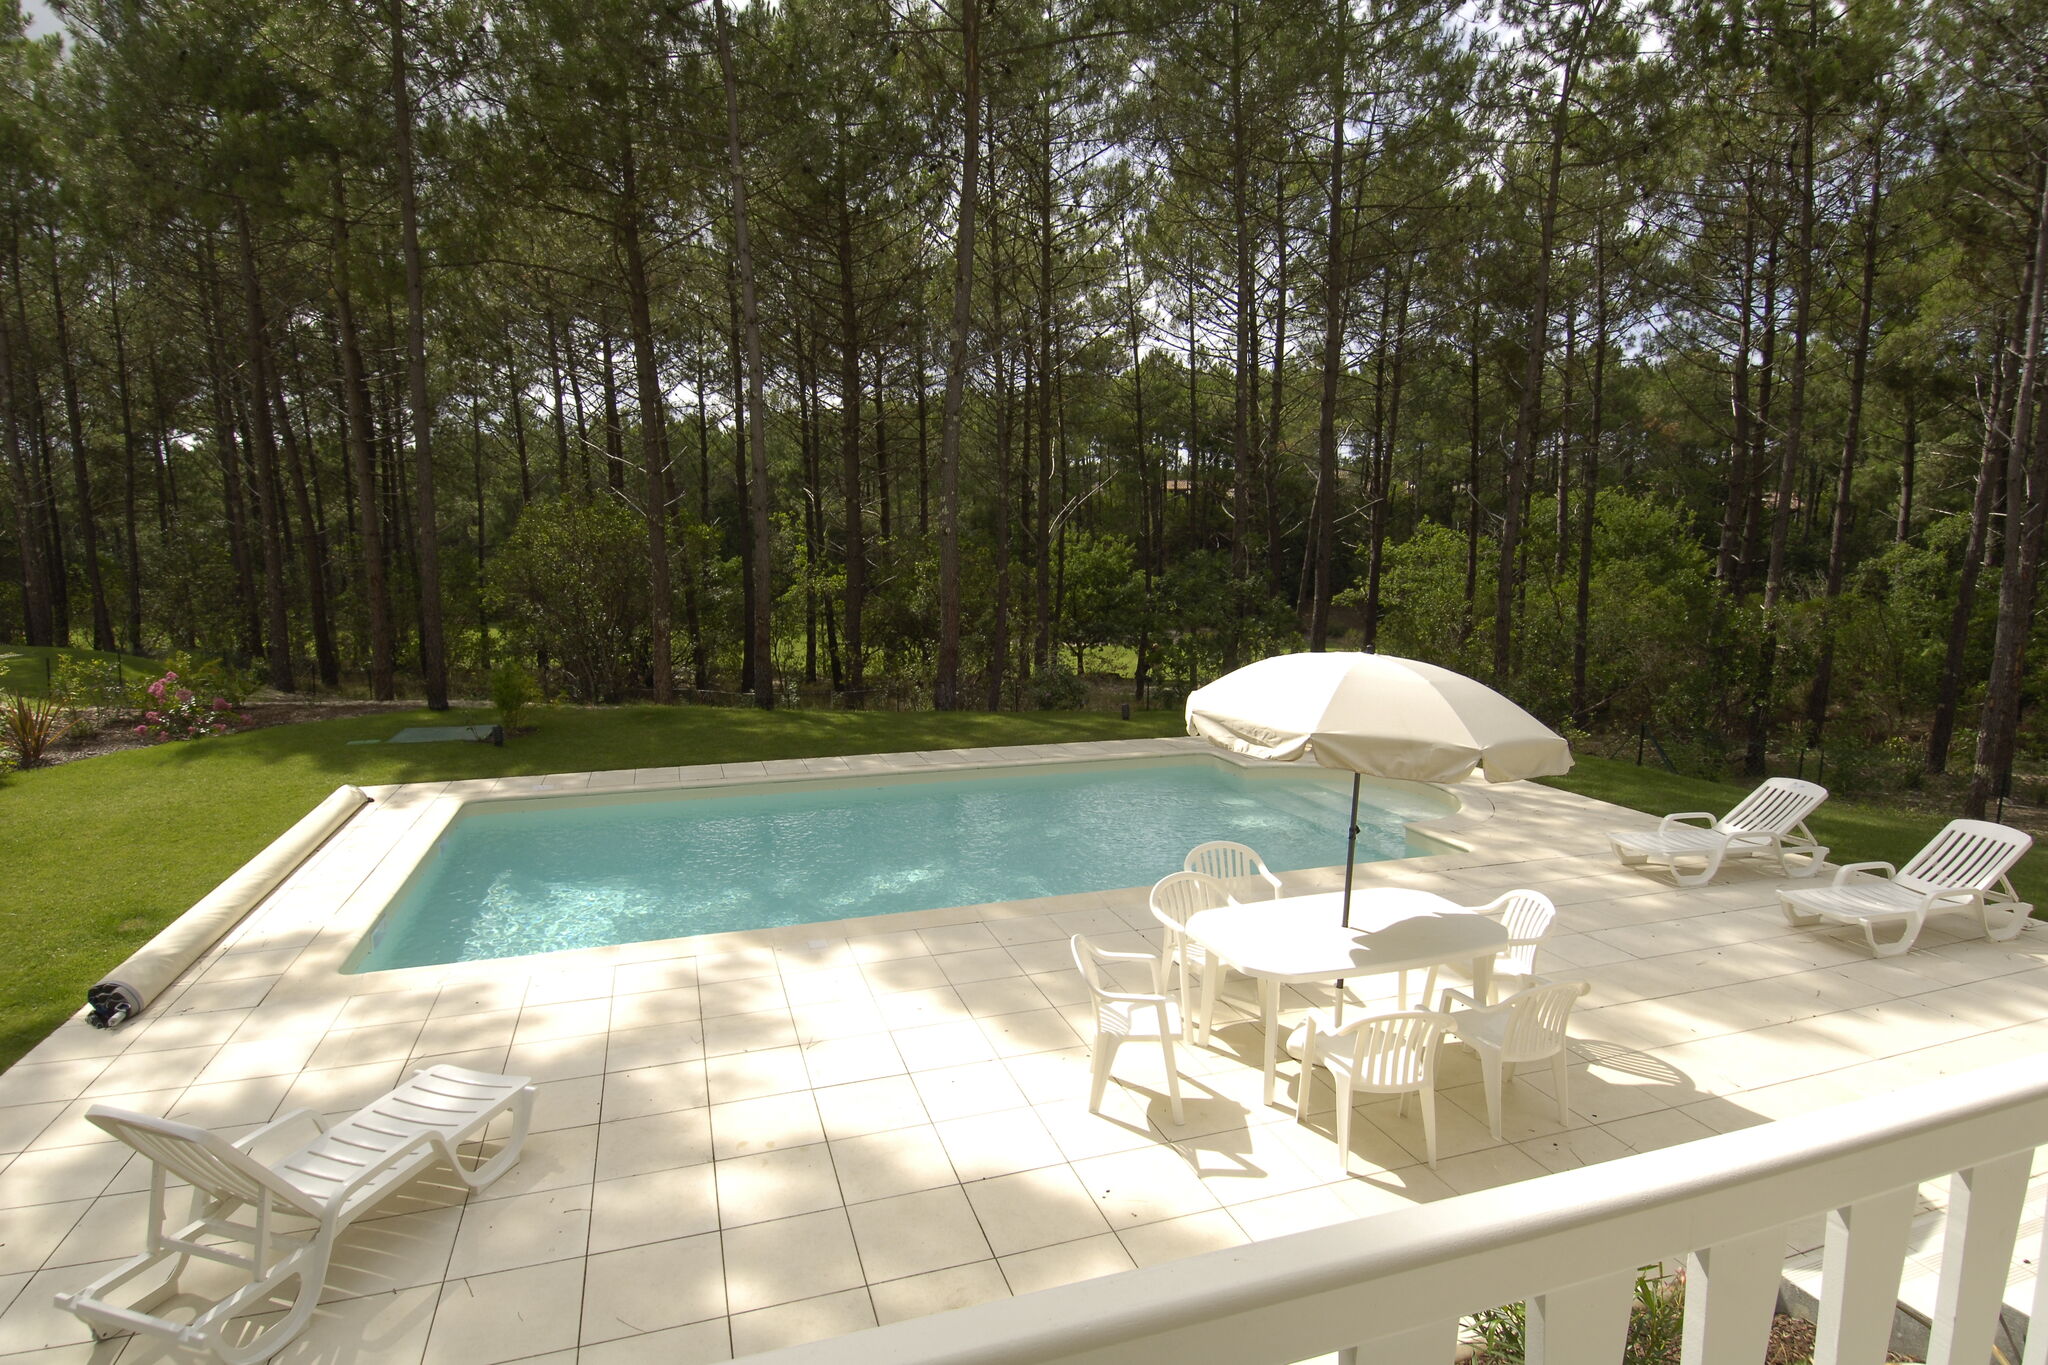 Schöne Villa mit privatem Pool in der Nähe der aquitanischen Küste